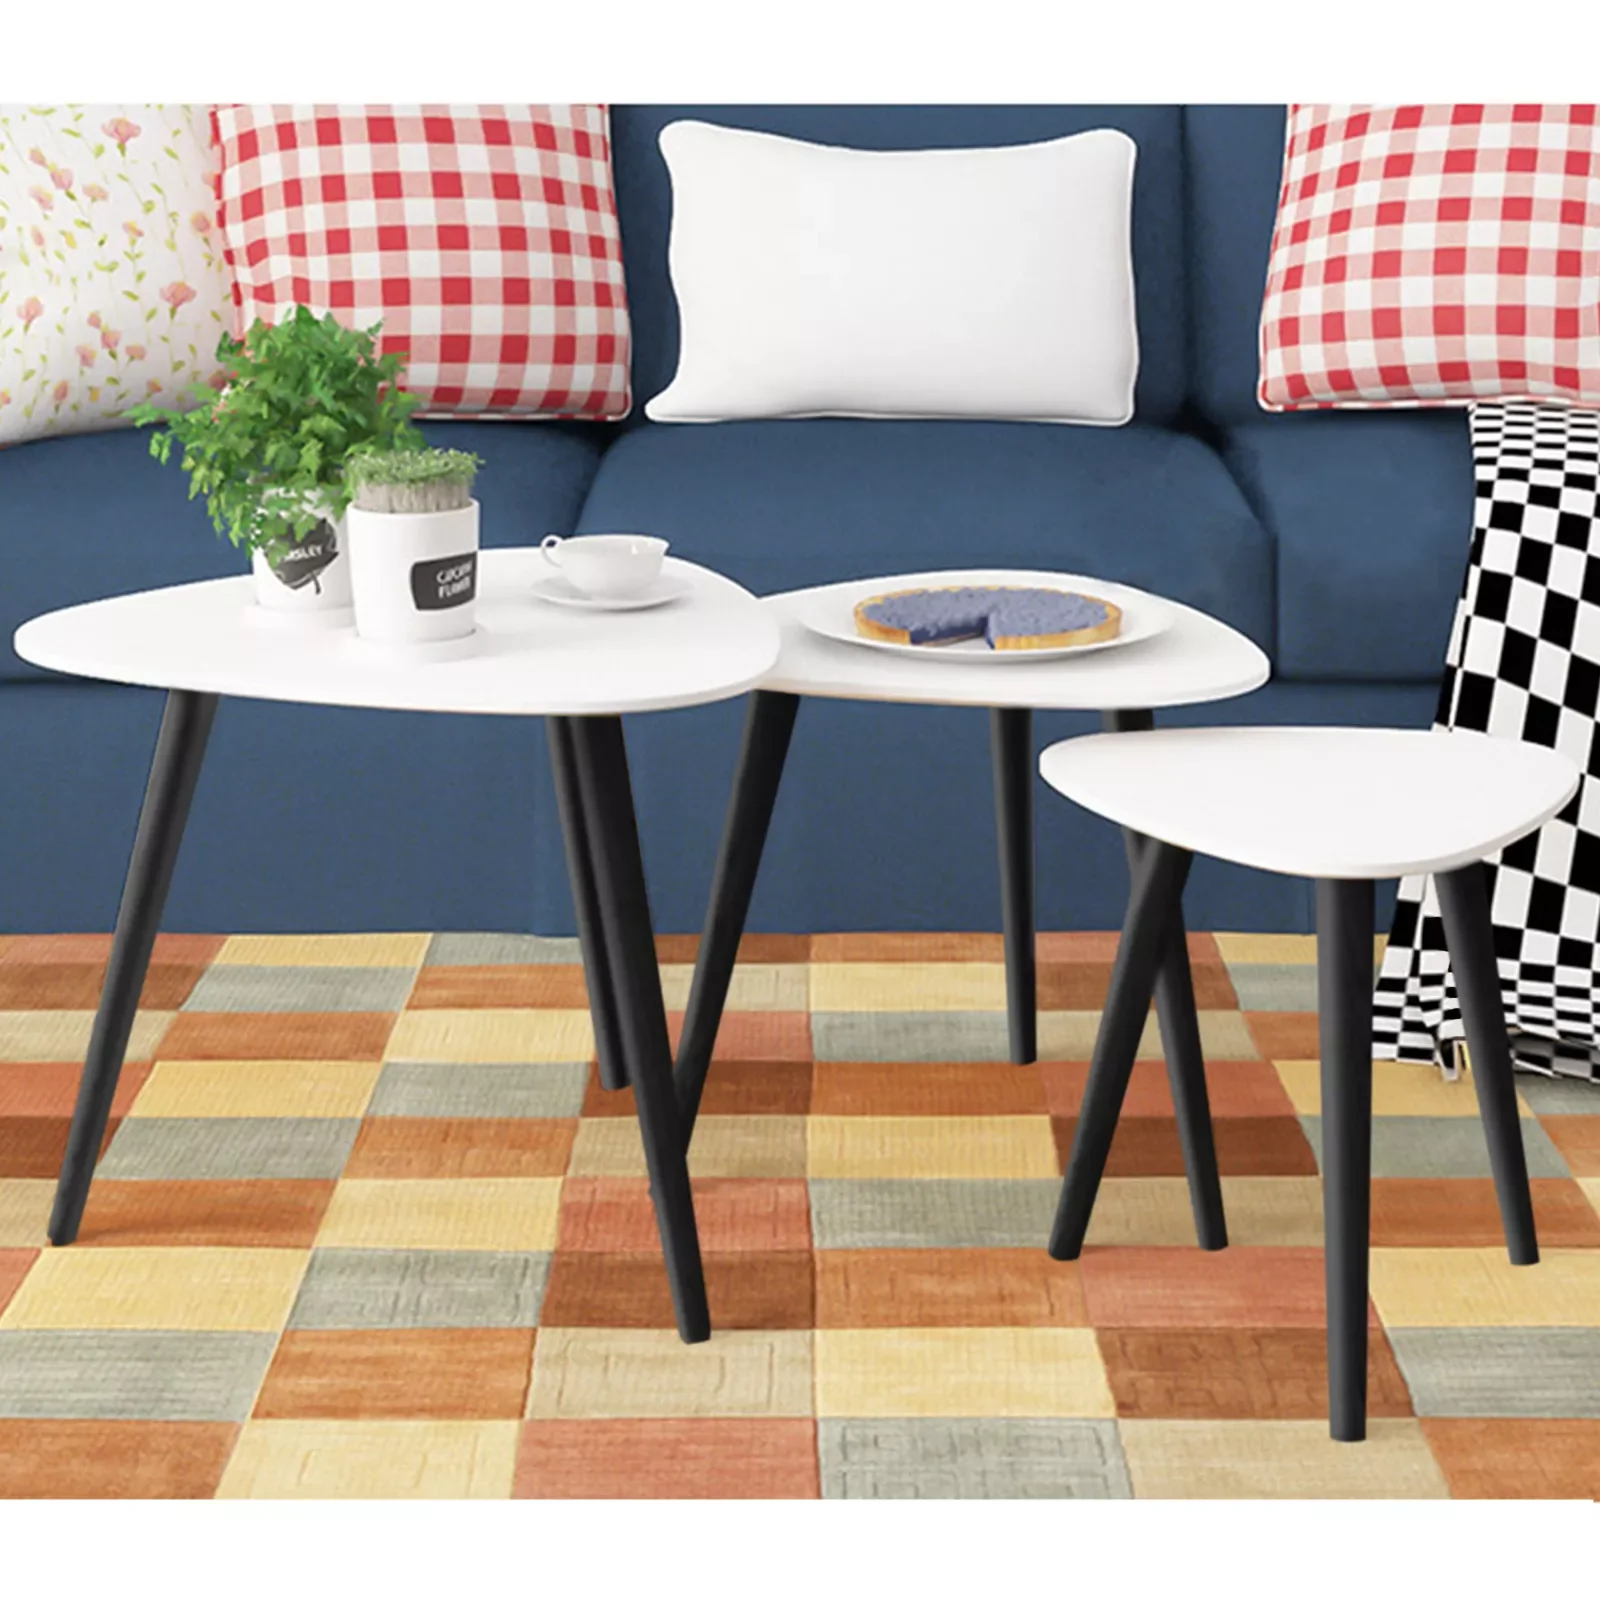 

Круглый креативный журнальный столик в скандинавском стиле для кровати, дивана, прикроватного столика, сервис для чая, фруктов, закусок, под...